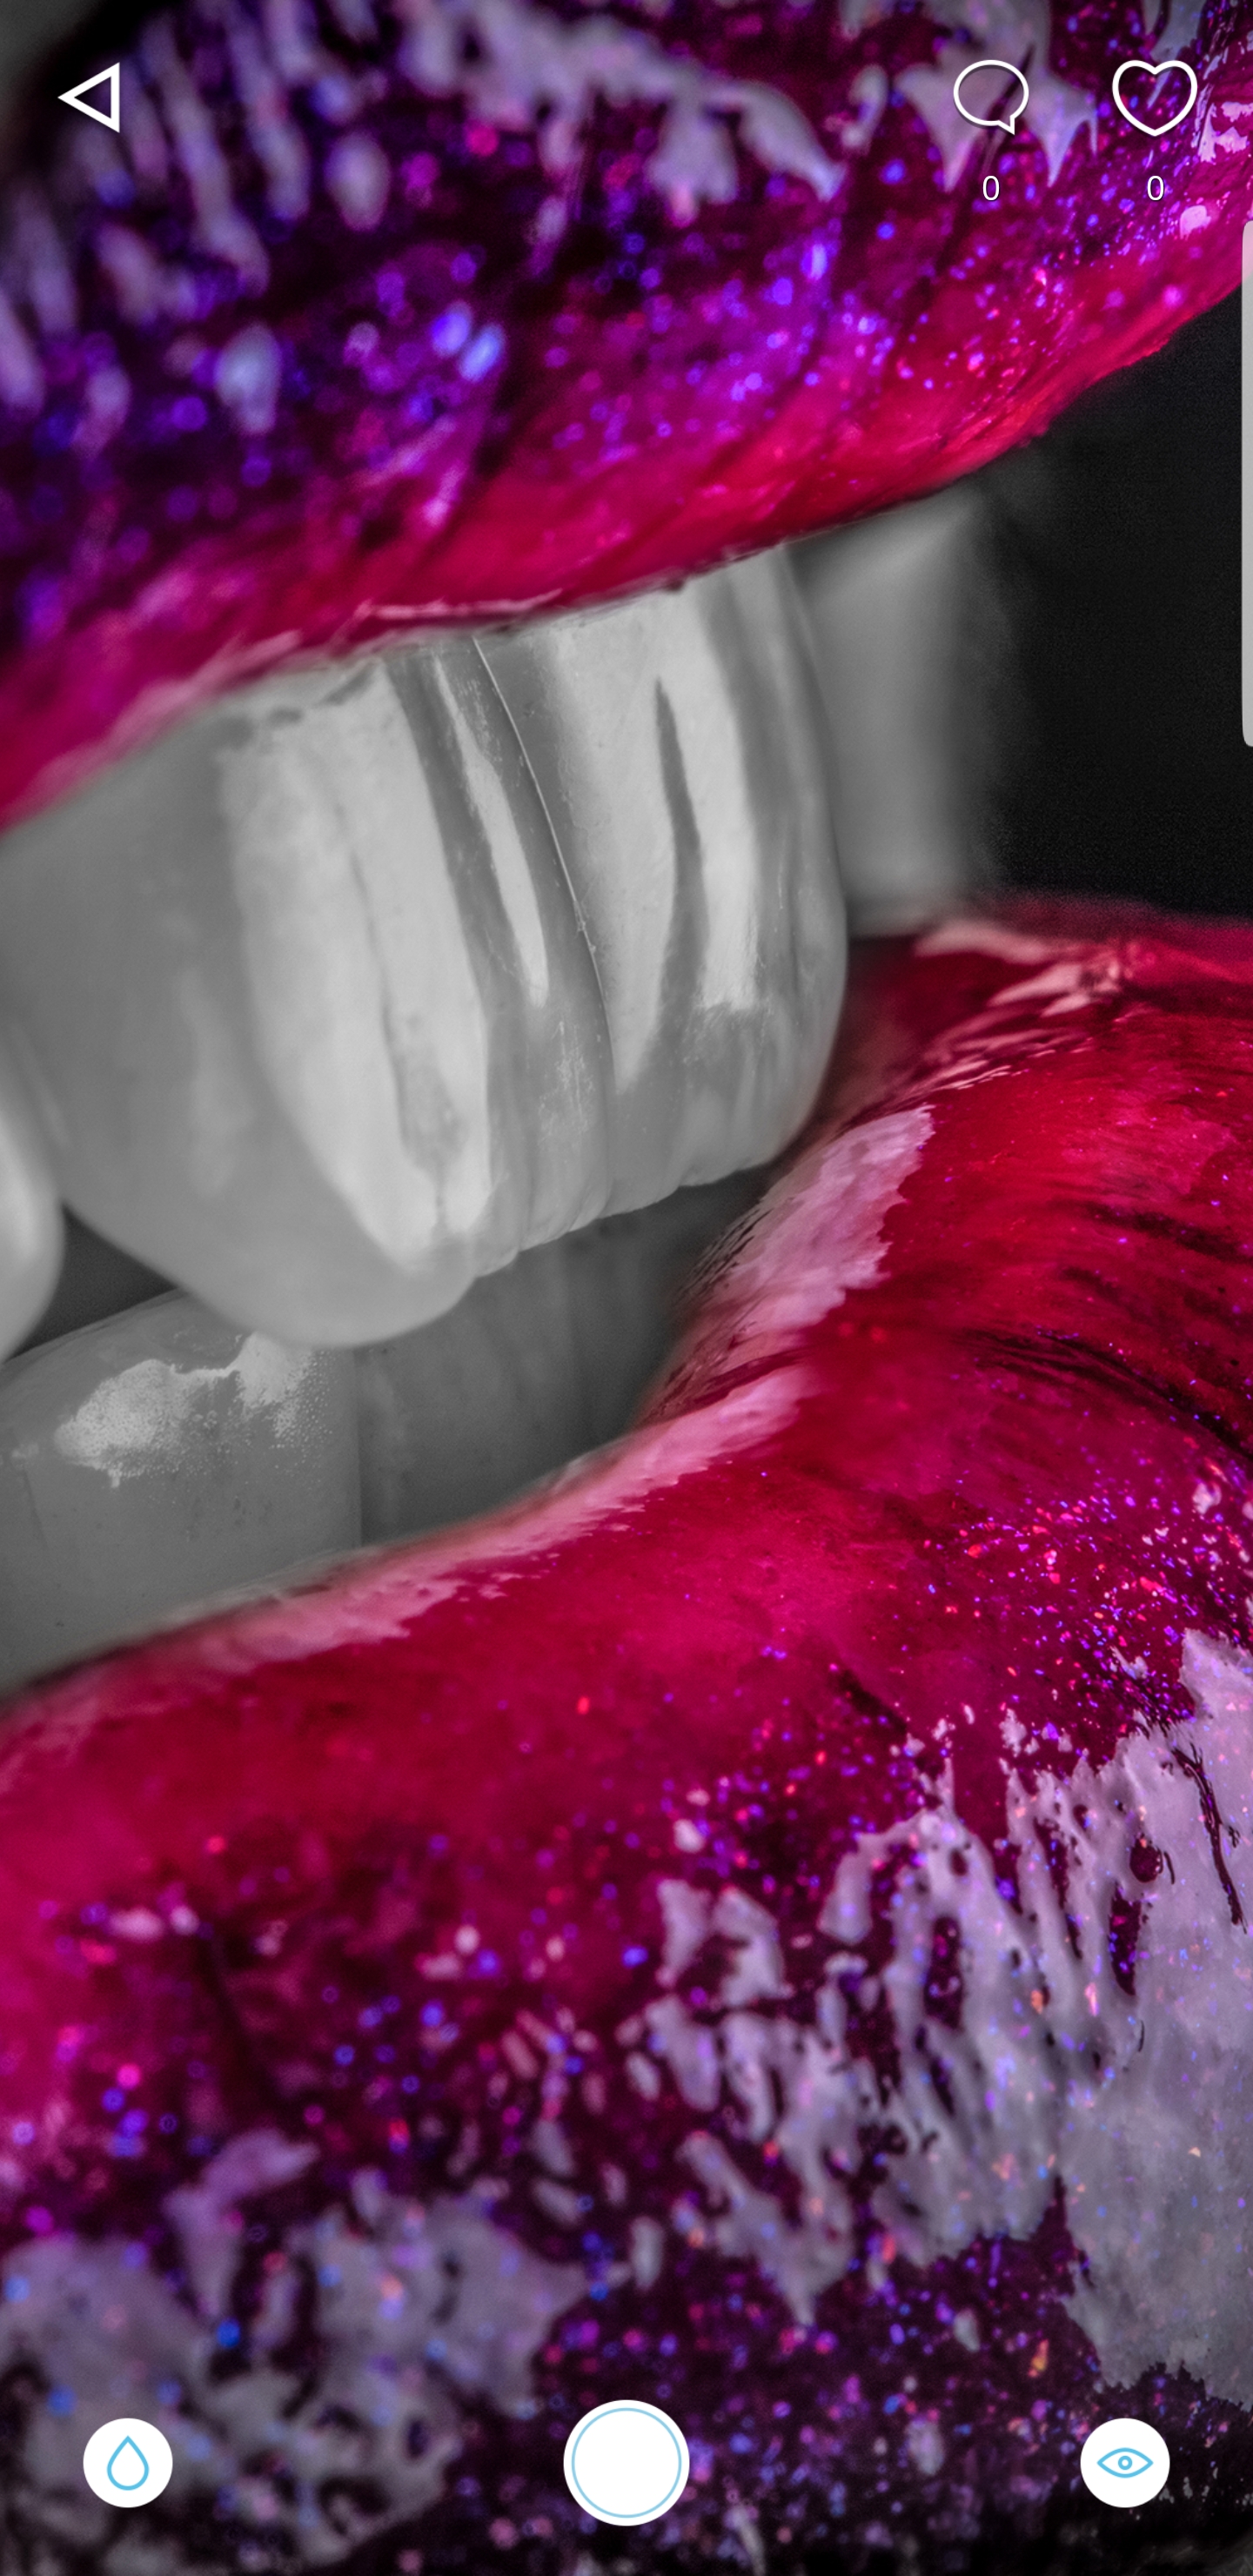 papel tapiz dental,rosado,púrpura,violeta,rojo,labio